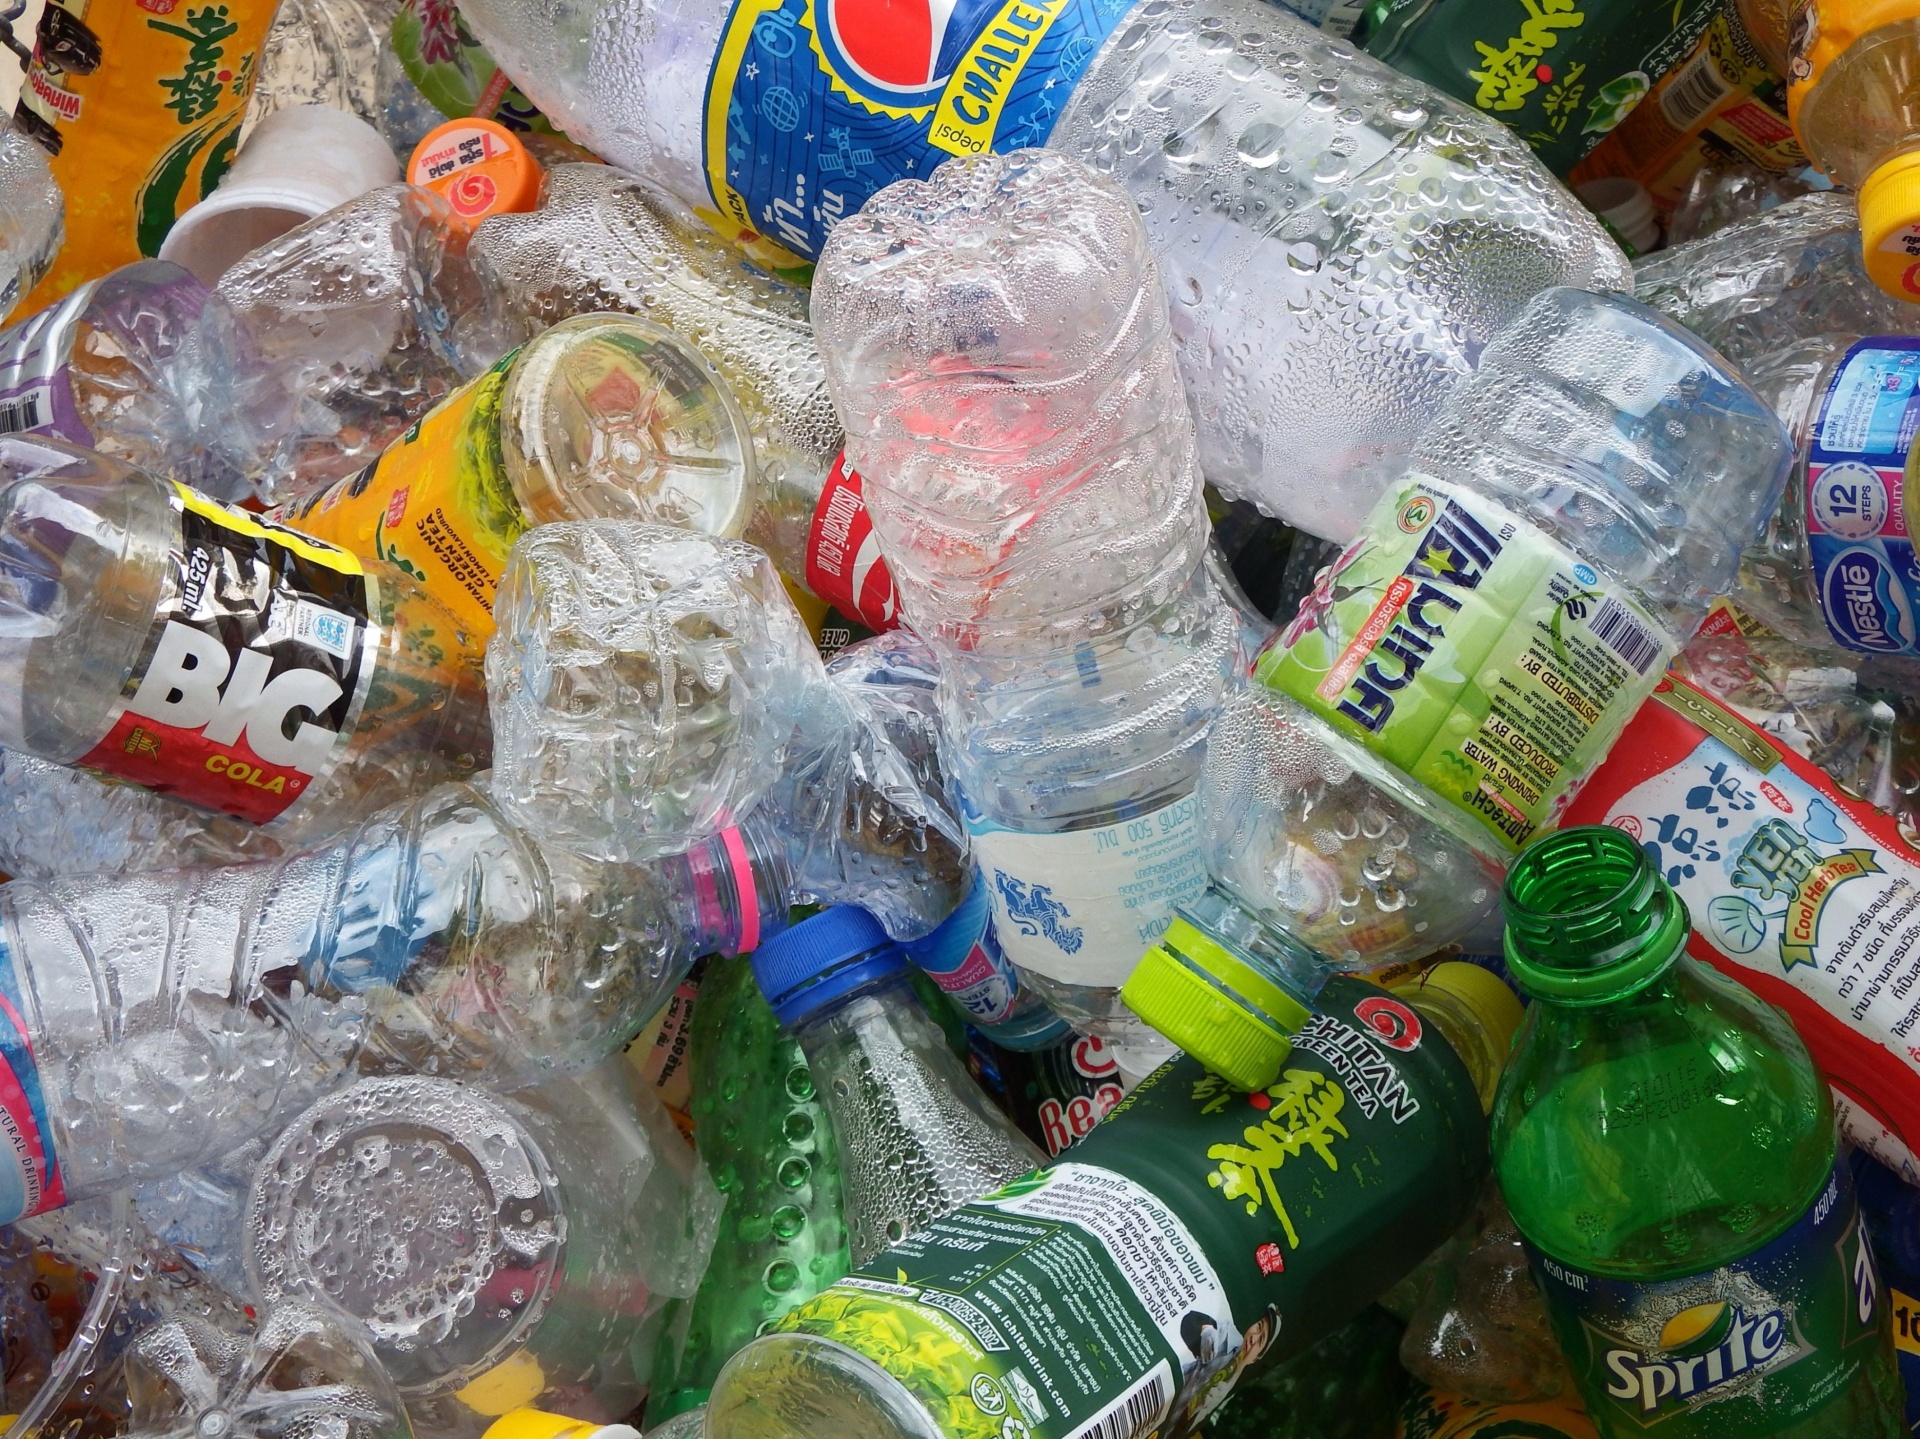 La imagen muestra amontonadas botellas de plástico de diferentes formas y tamaños